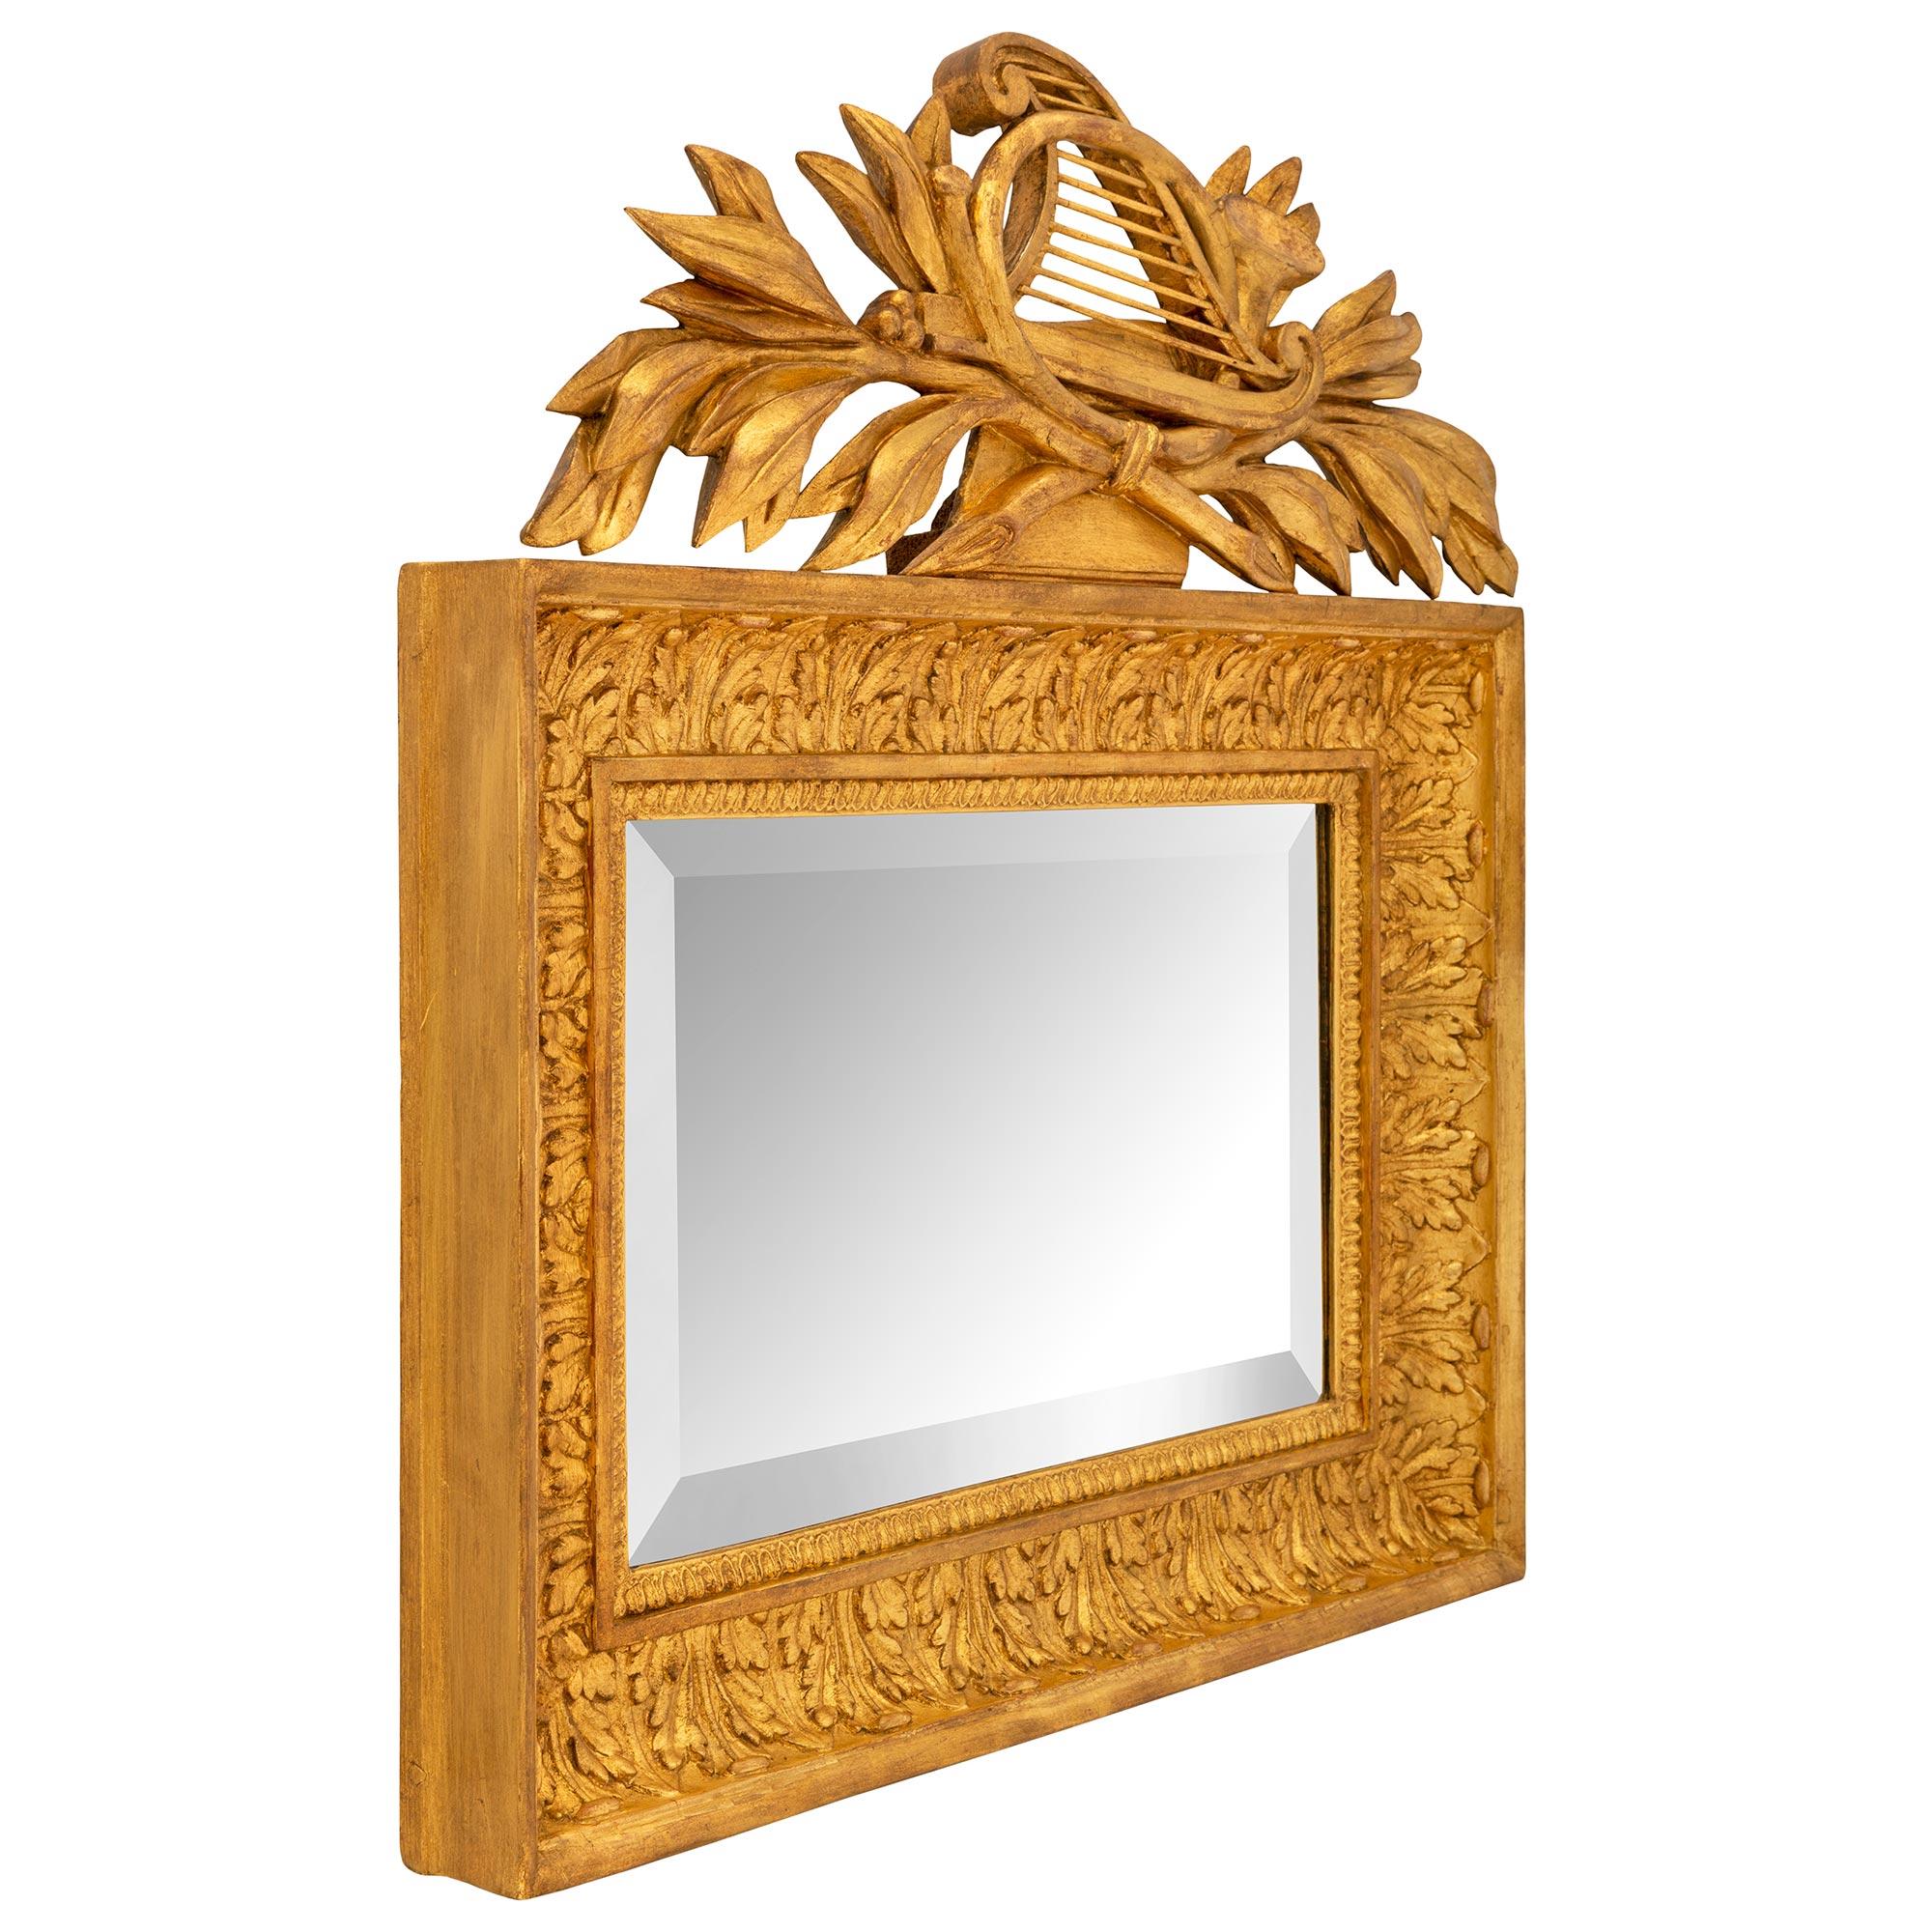 Une belle paire de miroirs en bois doré de style Louis XVI du 19ème siècle. Chaque miroir de petite taille conserve sa plaque biseautée d'origine, enchâssée dans une élégante bande de Cœur de Rai et une remarquable bordure richement sculptée de